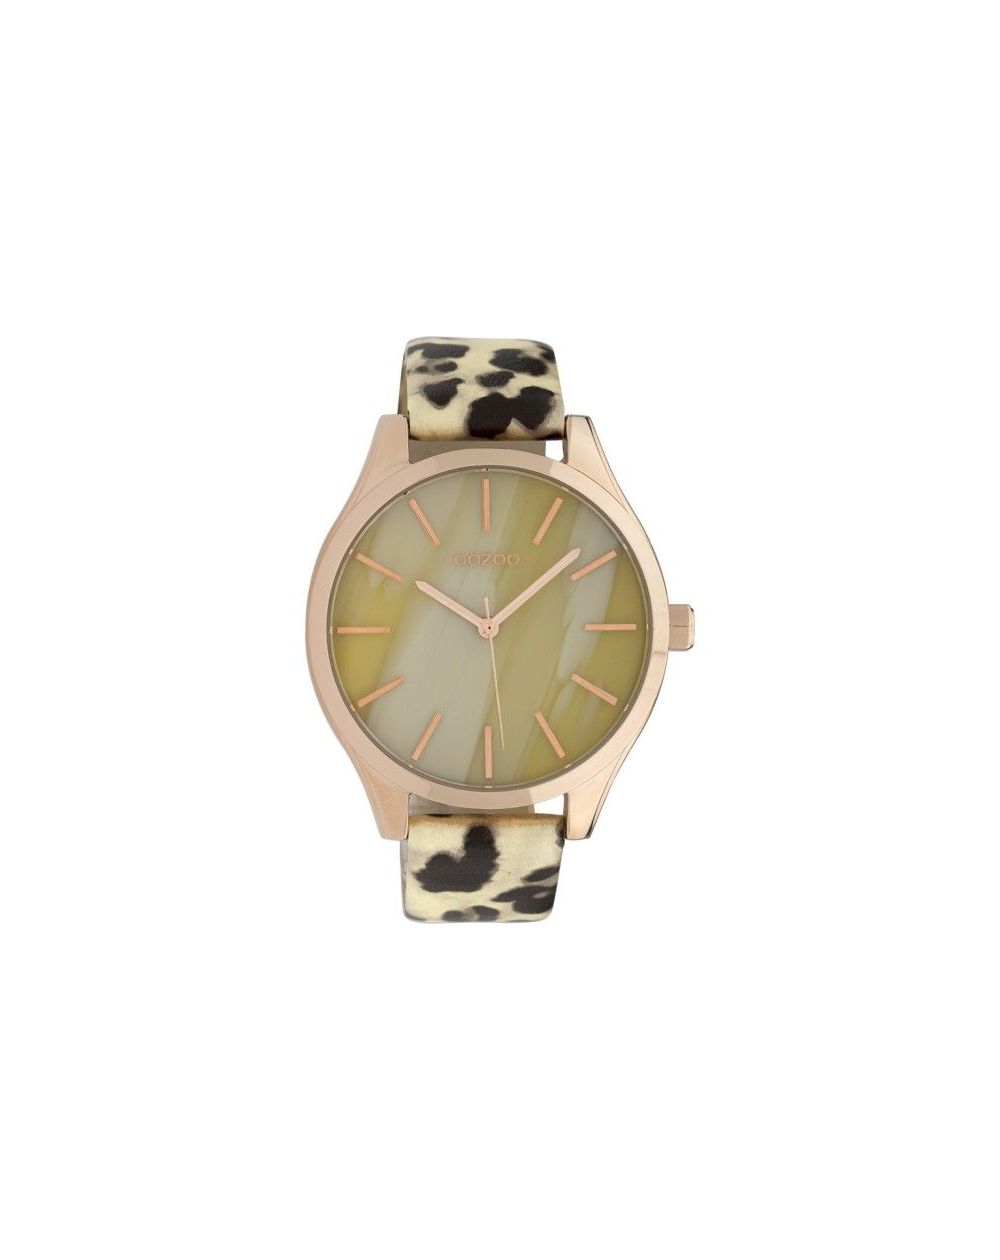 Montre Oozoo Timepieces C9790 light leopard - Marque de montre Oozoo